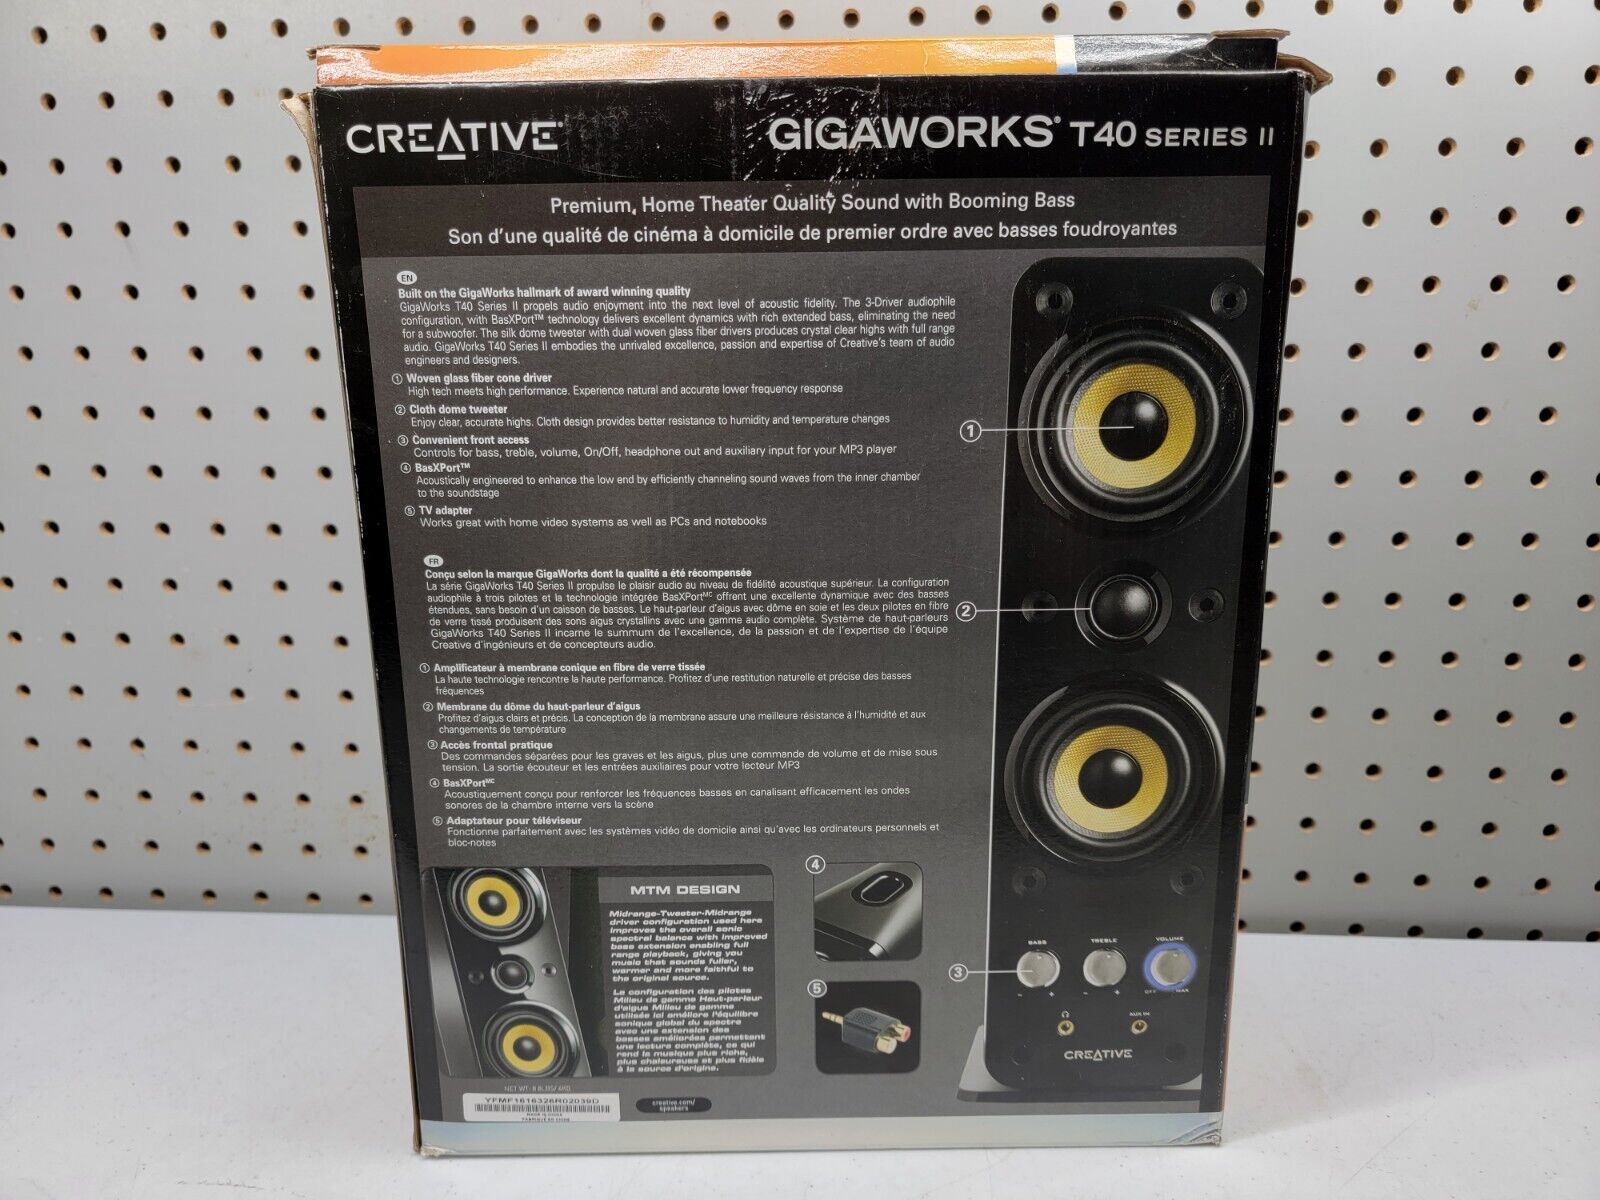 Gigaworks t40 series ii